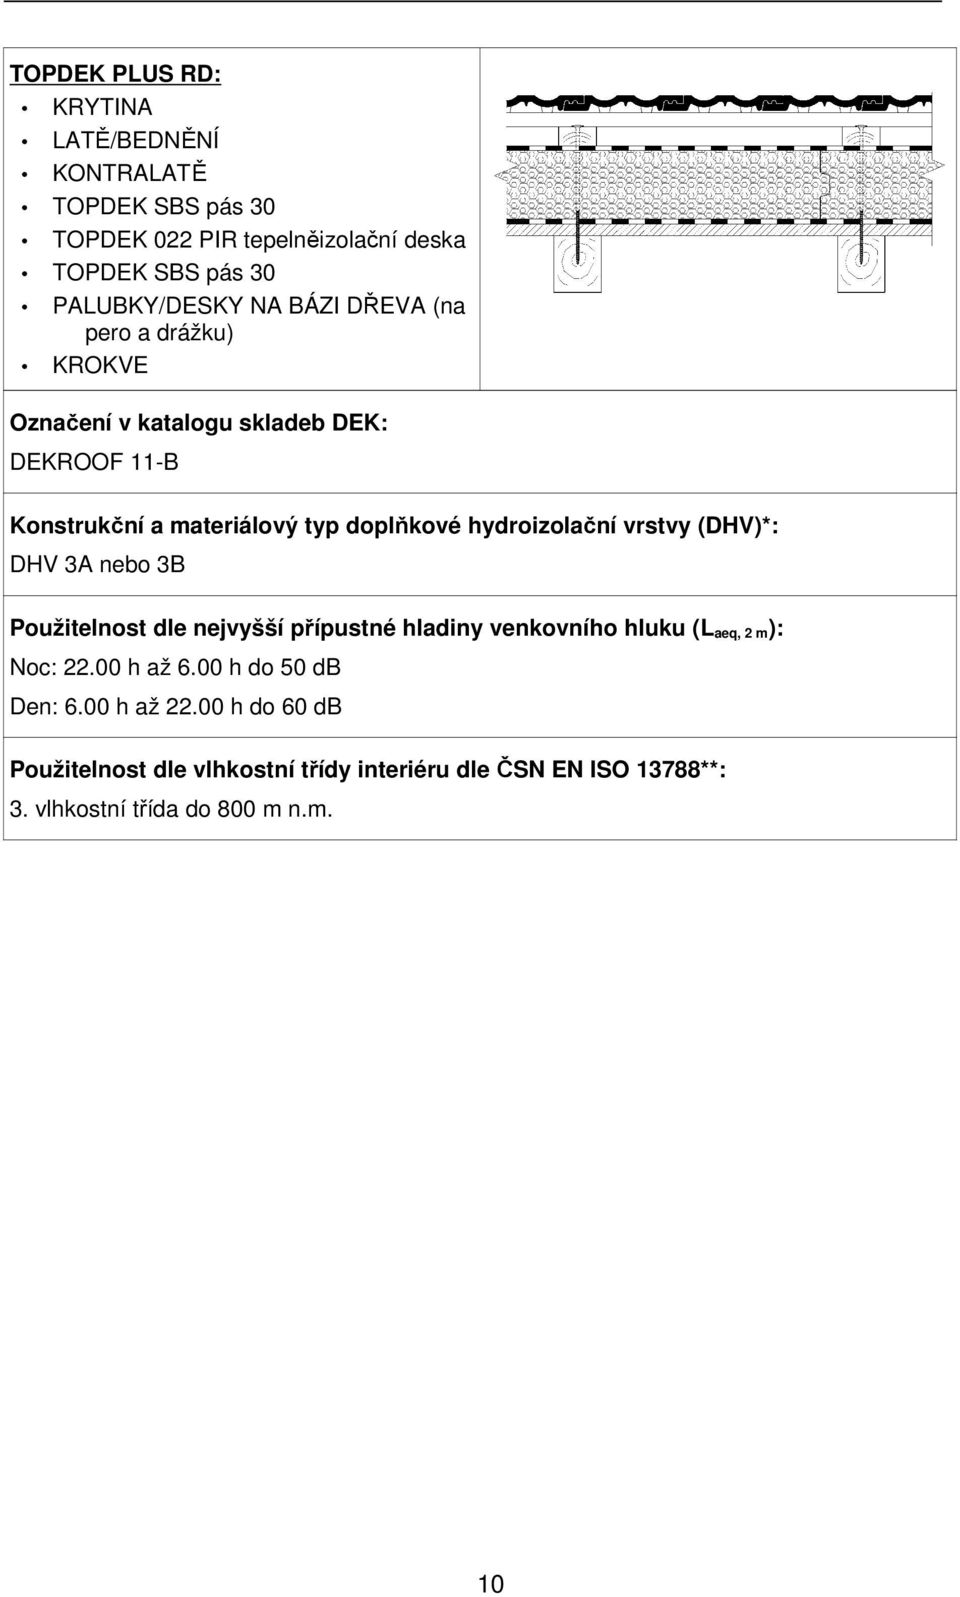 hydroizolační vrstvy (DHV)*: DHV 3A nebo 3B Použitelnost dle nejvyšší přípustné hladiny venkovního hluku (L aeq, 2 m): Noc: 22.00 h až 6.